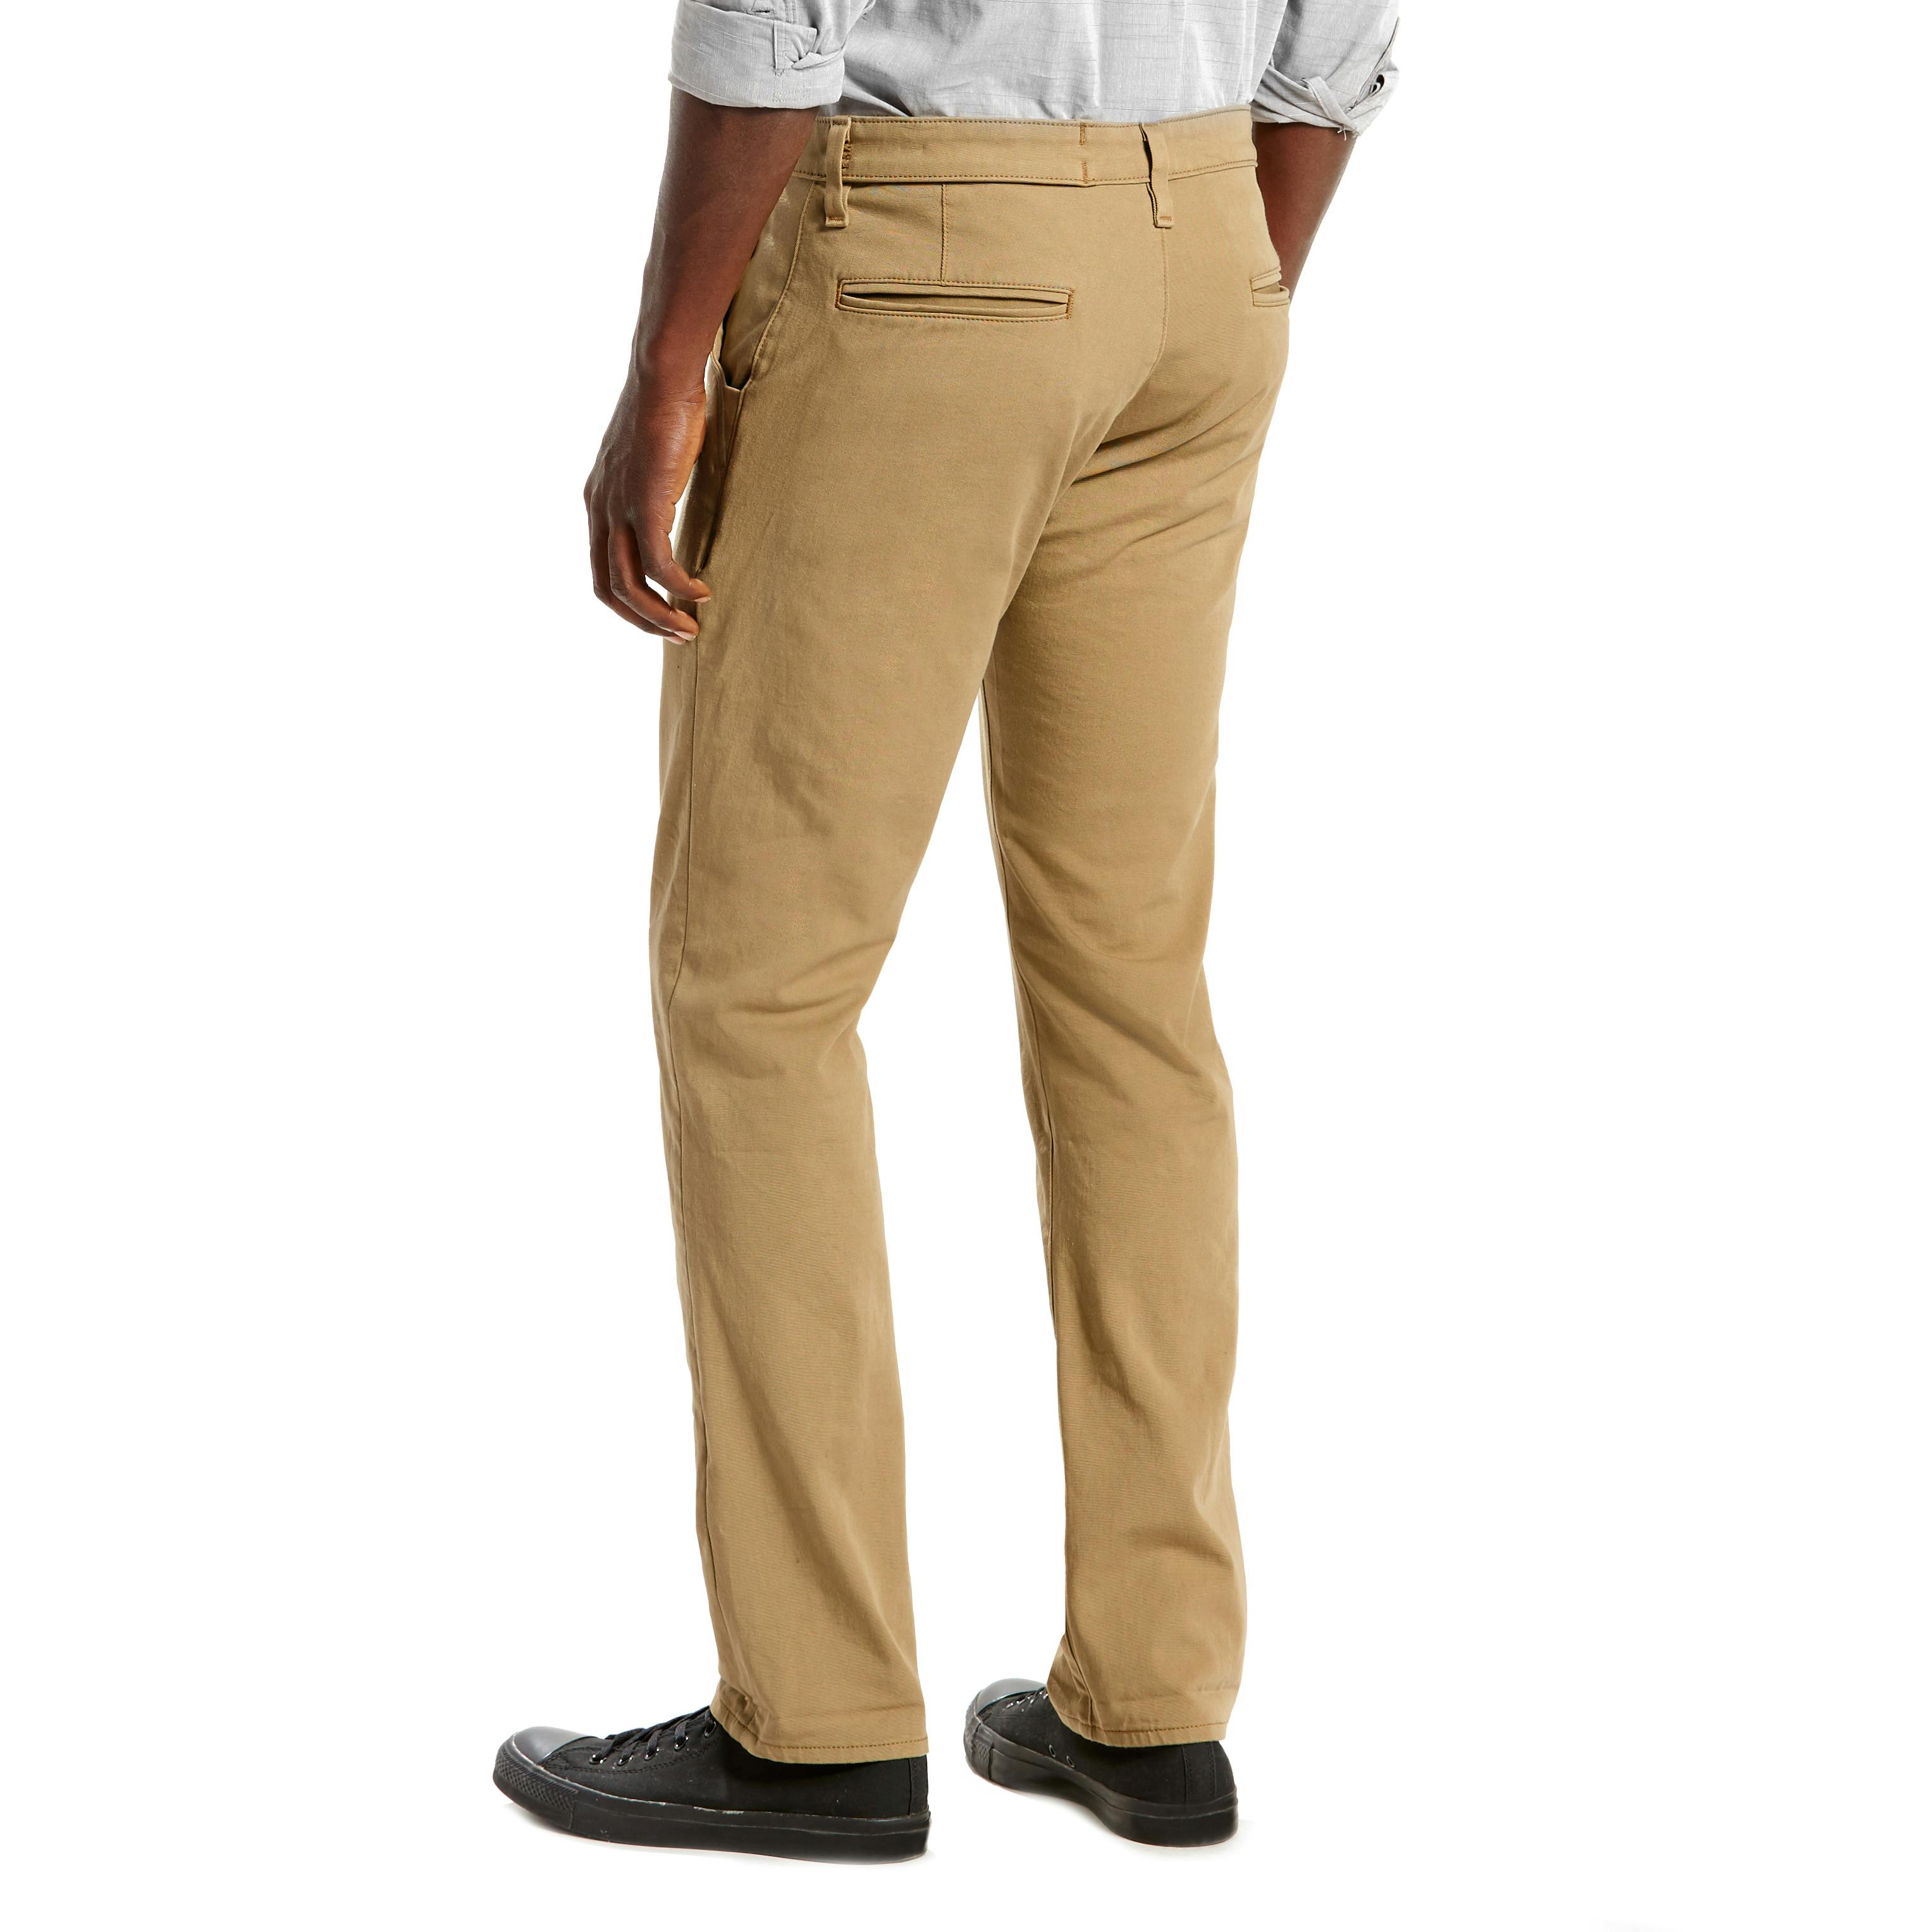 Levi's Commuter™ 511 Slim Fit Trouser - Harvest Gold | Pants | Huckberry